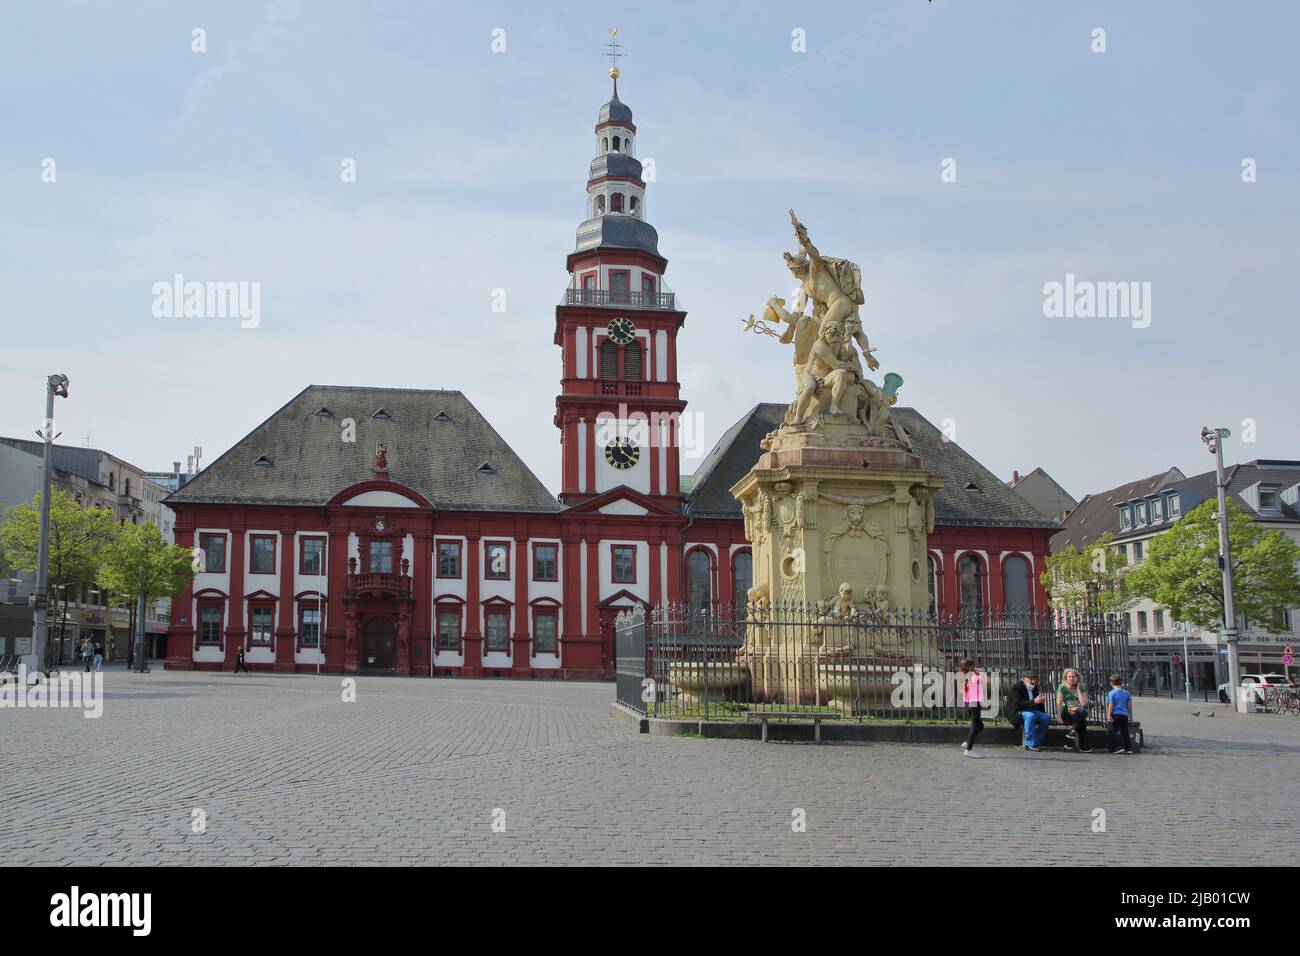 Marktplatz mit altem Rathaus, St. Sebastian Kirche und Marktbrunnen in Mannheim, Hessen, Deutschland Stockfoto